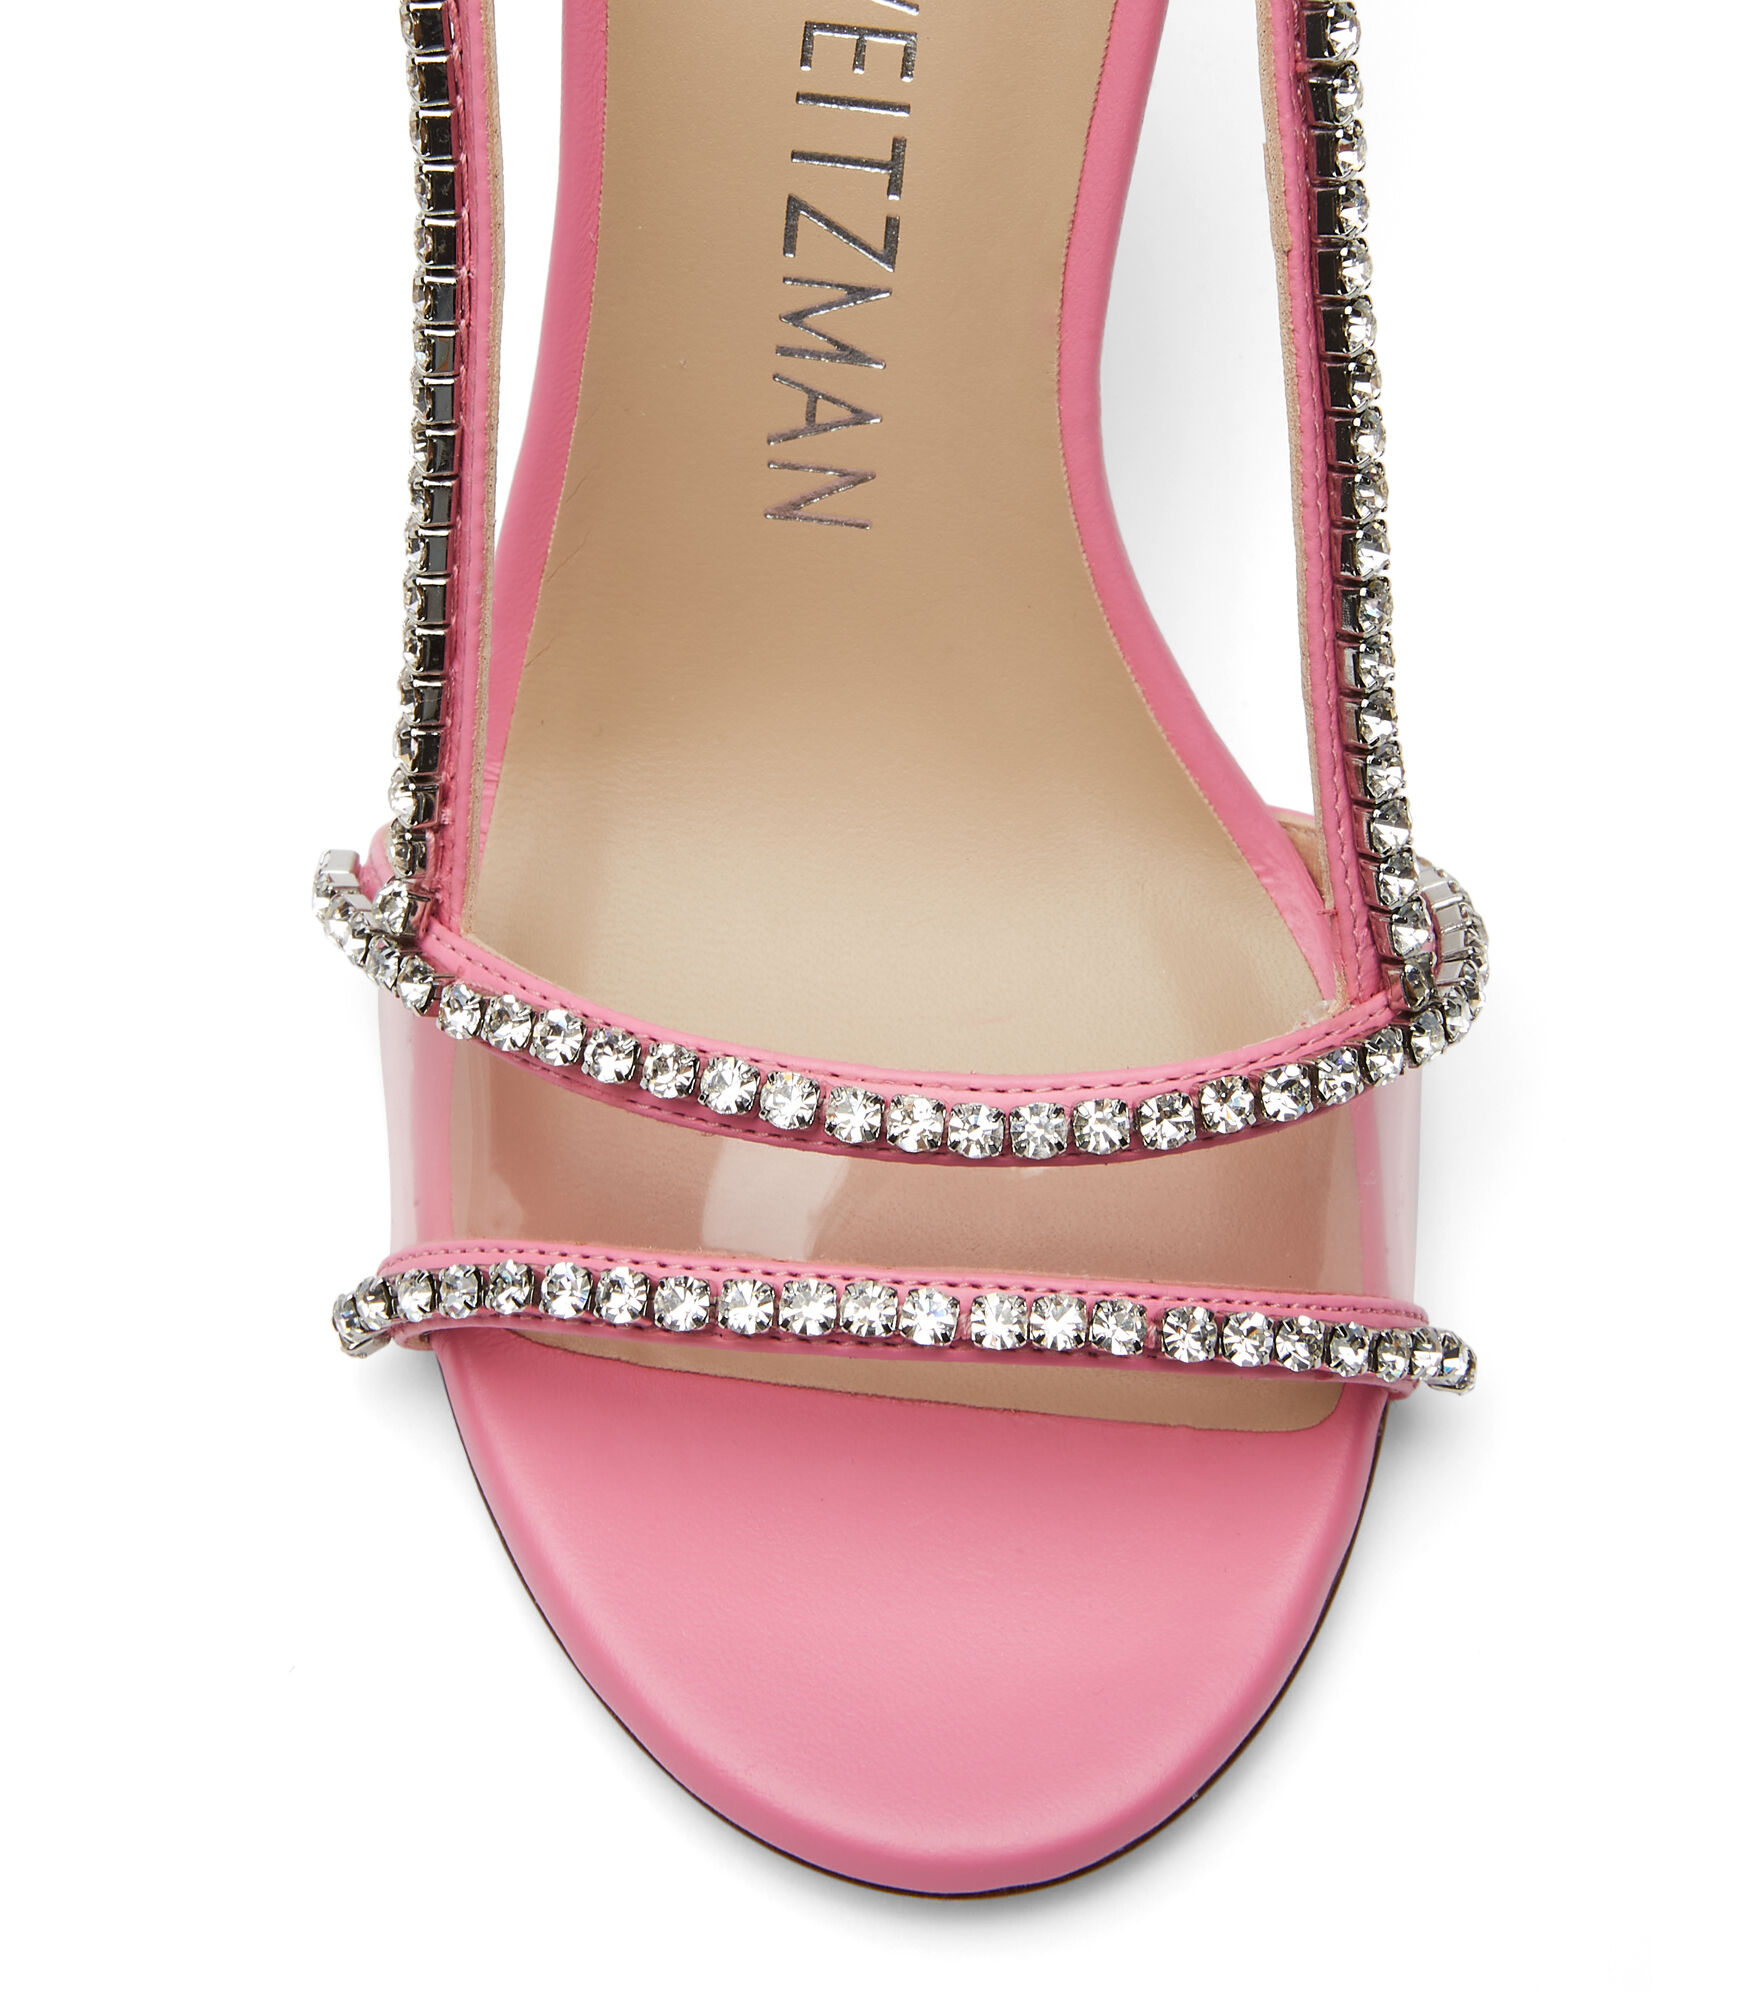 Stuart Weitzman crystal embellished 110mm sandals - Pink